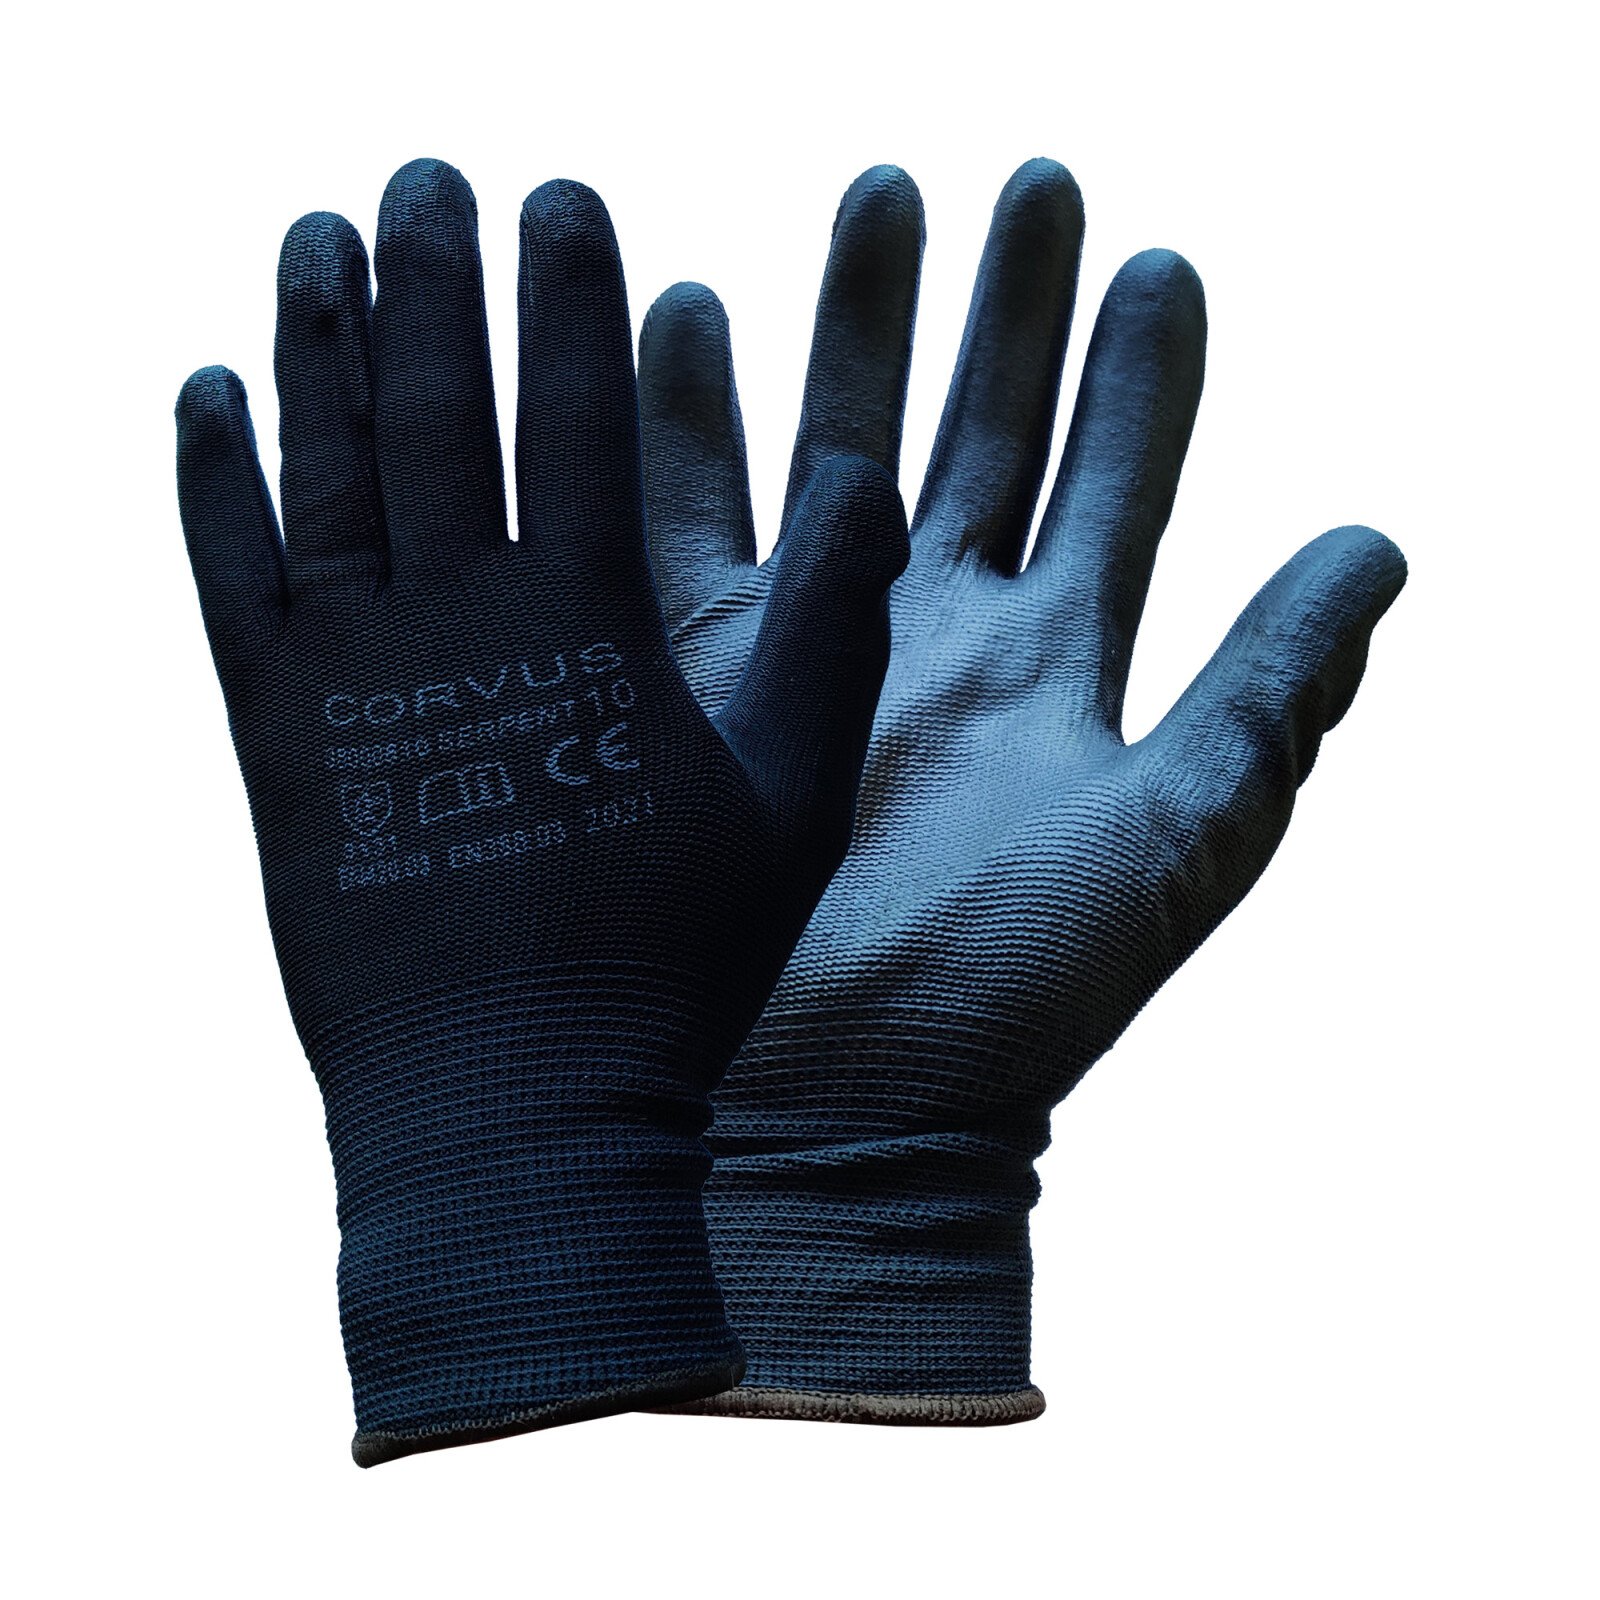 Corvus polyurethane gloves - Size 10 - XL thumb